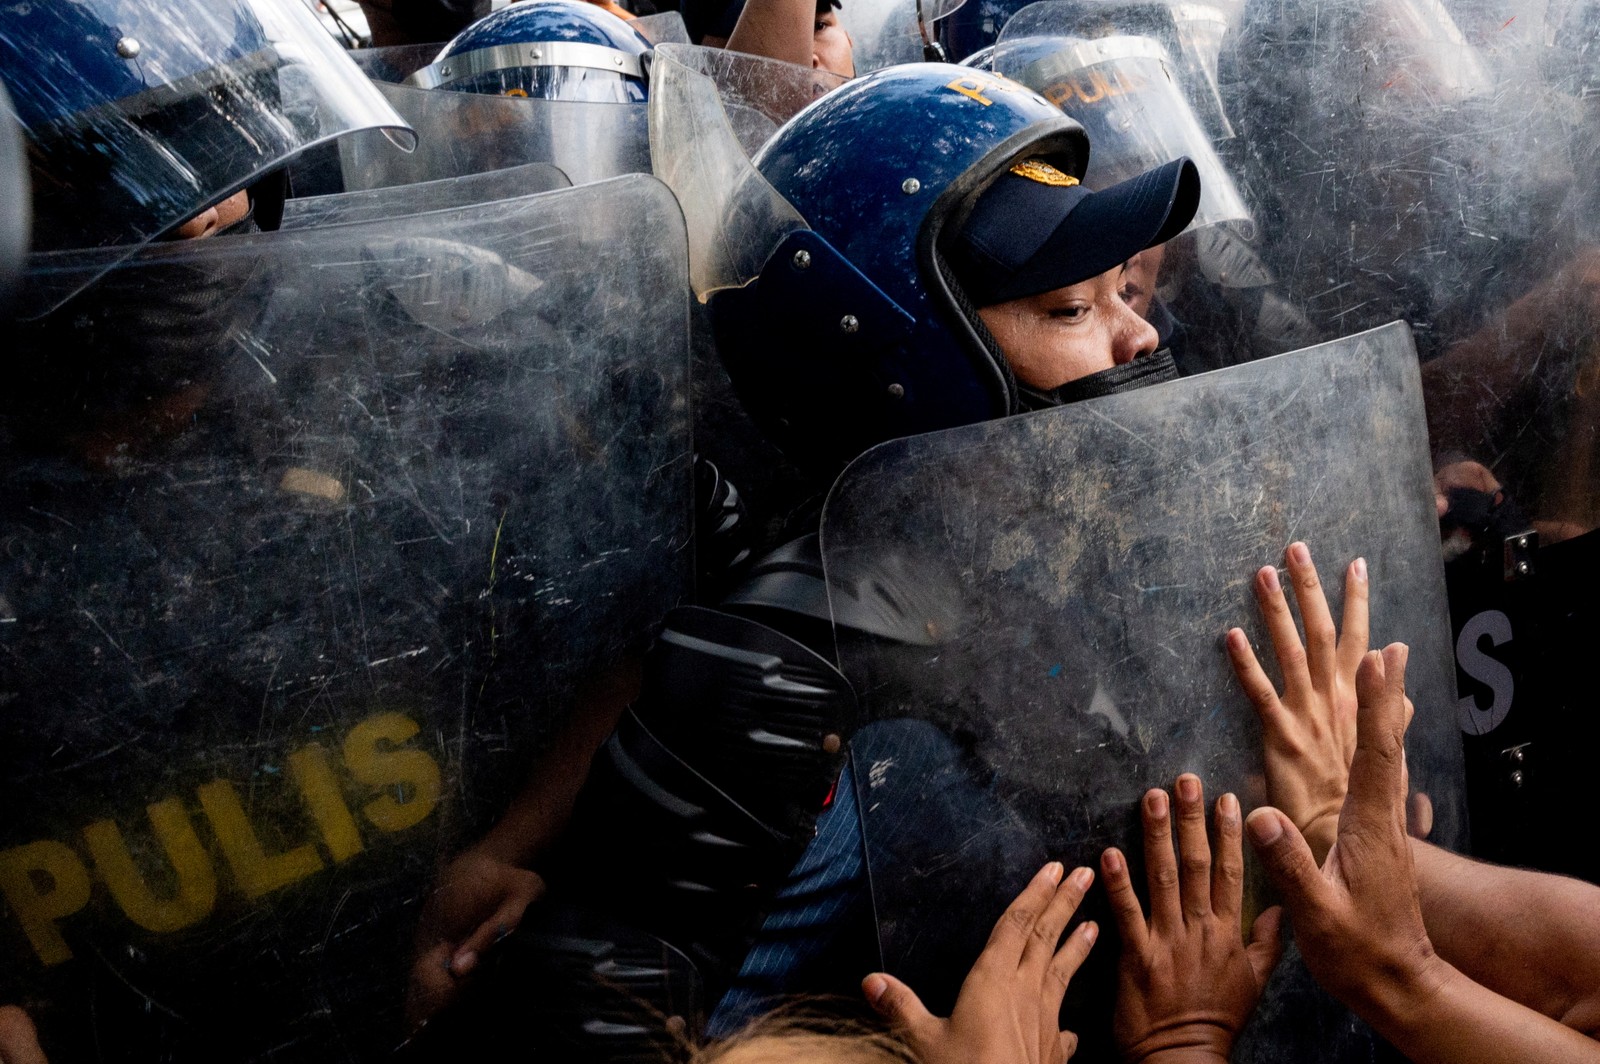 Policiais bloqueiam ativistas durante um protesto denunciando a proclamação do novo presidente e vice-presidente filipino, em frente à Comissão de Direitos Humanos, em Quezon City, Metro Manila, Filipinas — Foto: LISA MARIE DAVID / REUTERS